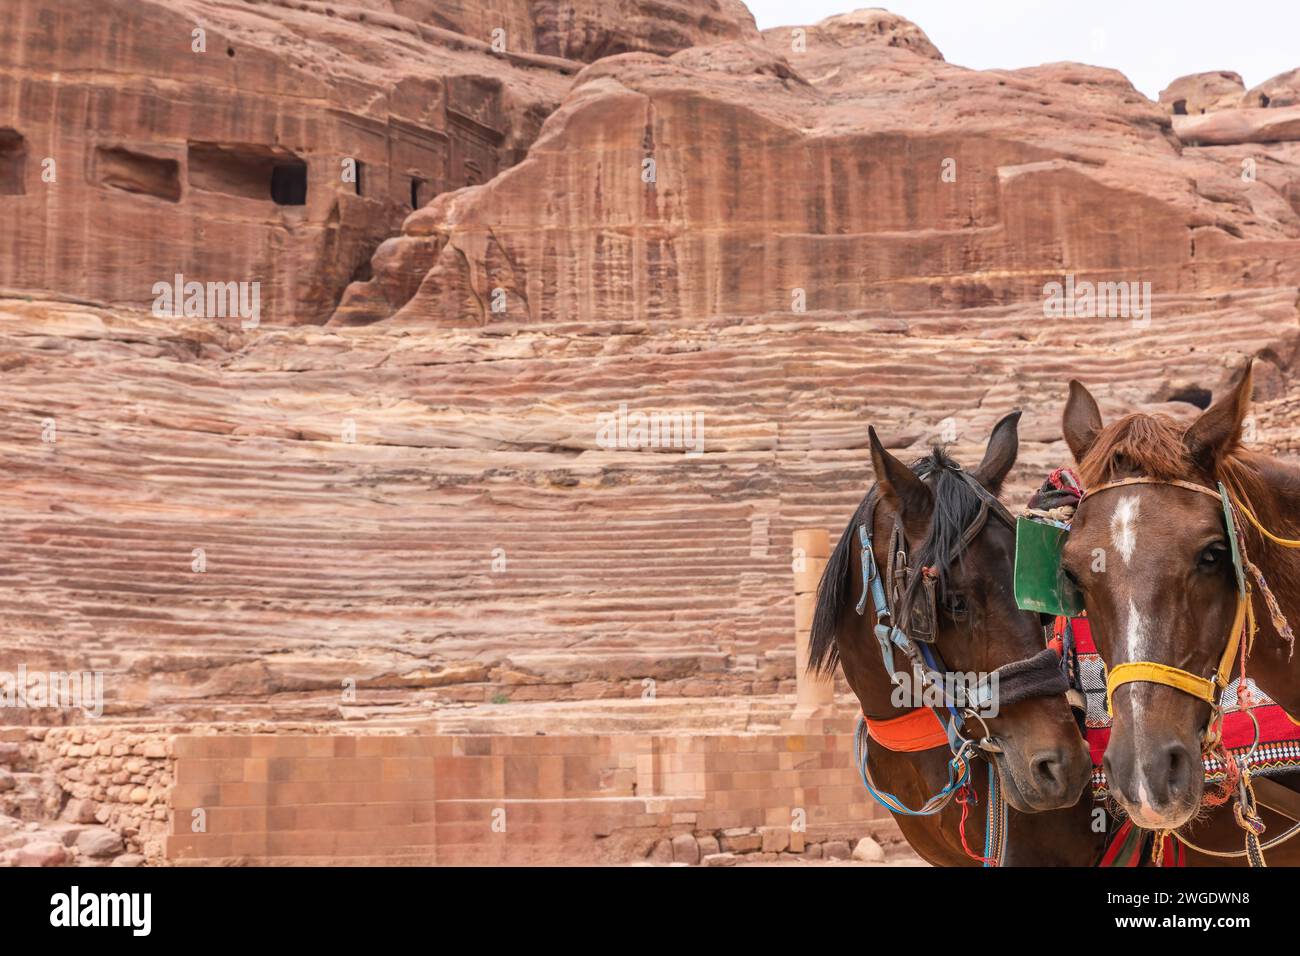 Des chevaux décorés attendent leurs touristes devant le théâtre du site archéologique de Pétra en Jordanie. Banque D'Images